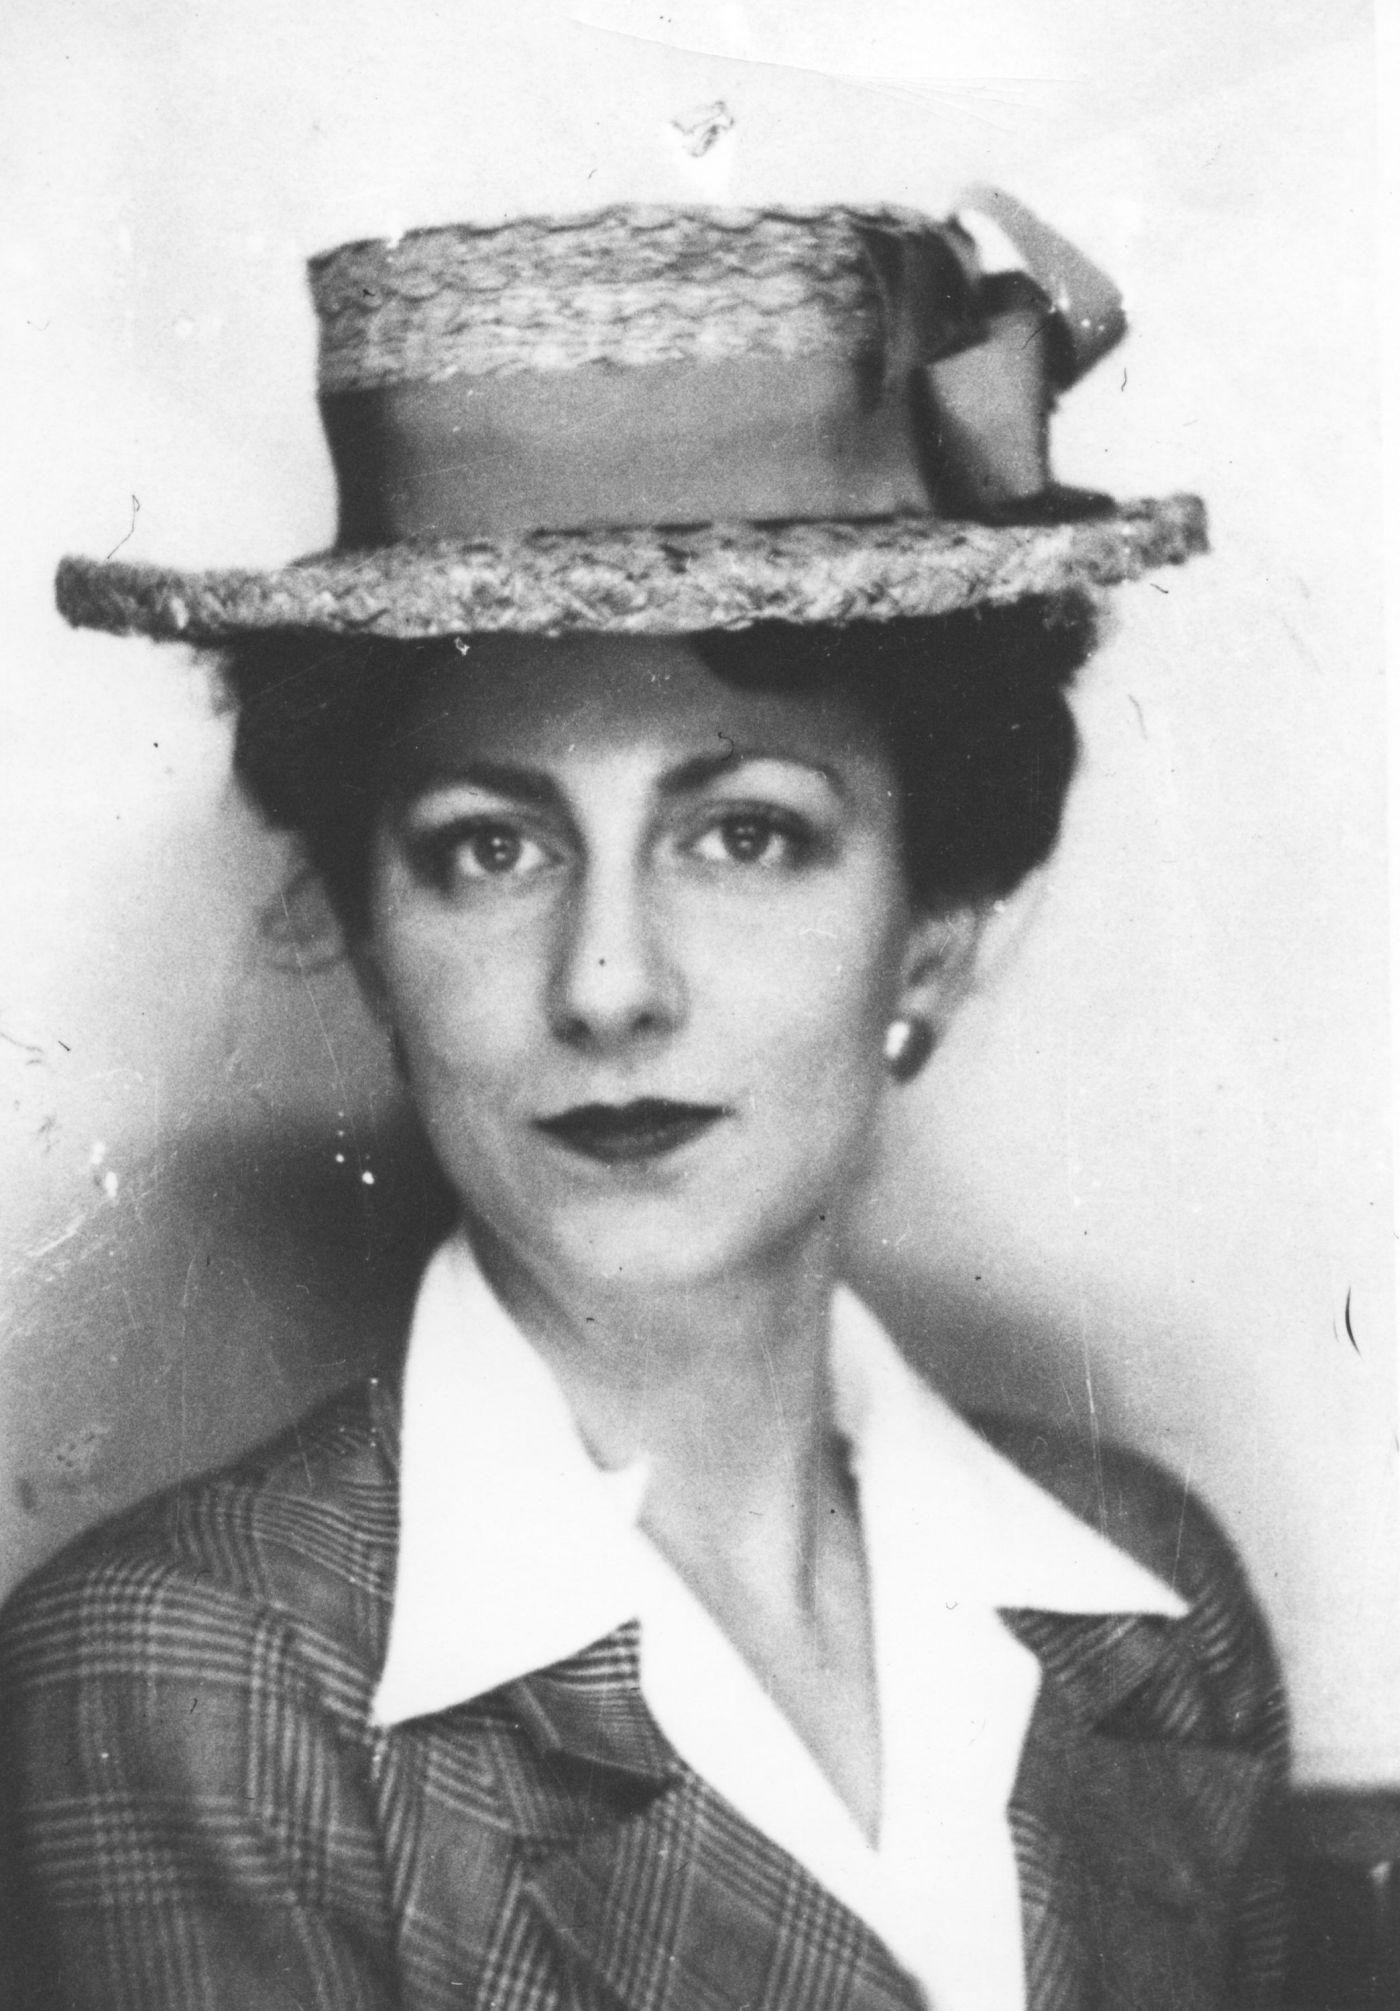 Portrait en noir et blanc d’une jeune femme. Elle a le regard très direct. Elle porte un élégant chapeau de paille décoré d’un large ruban ainsi qu’un veston de plaid et un chemisier blanc.